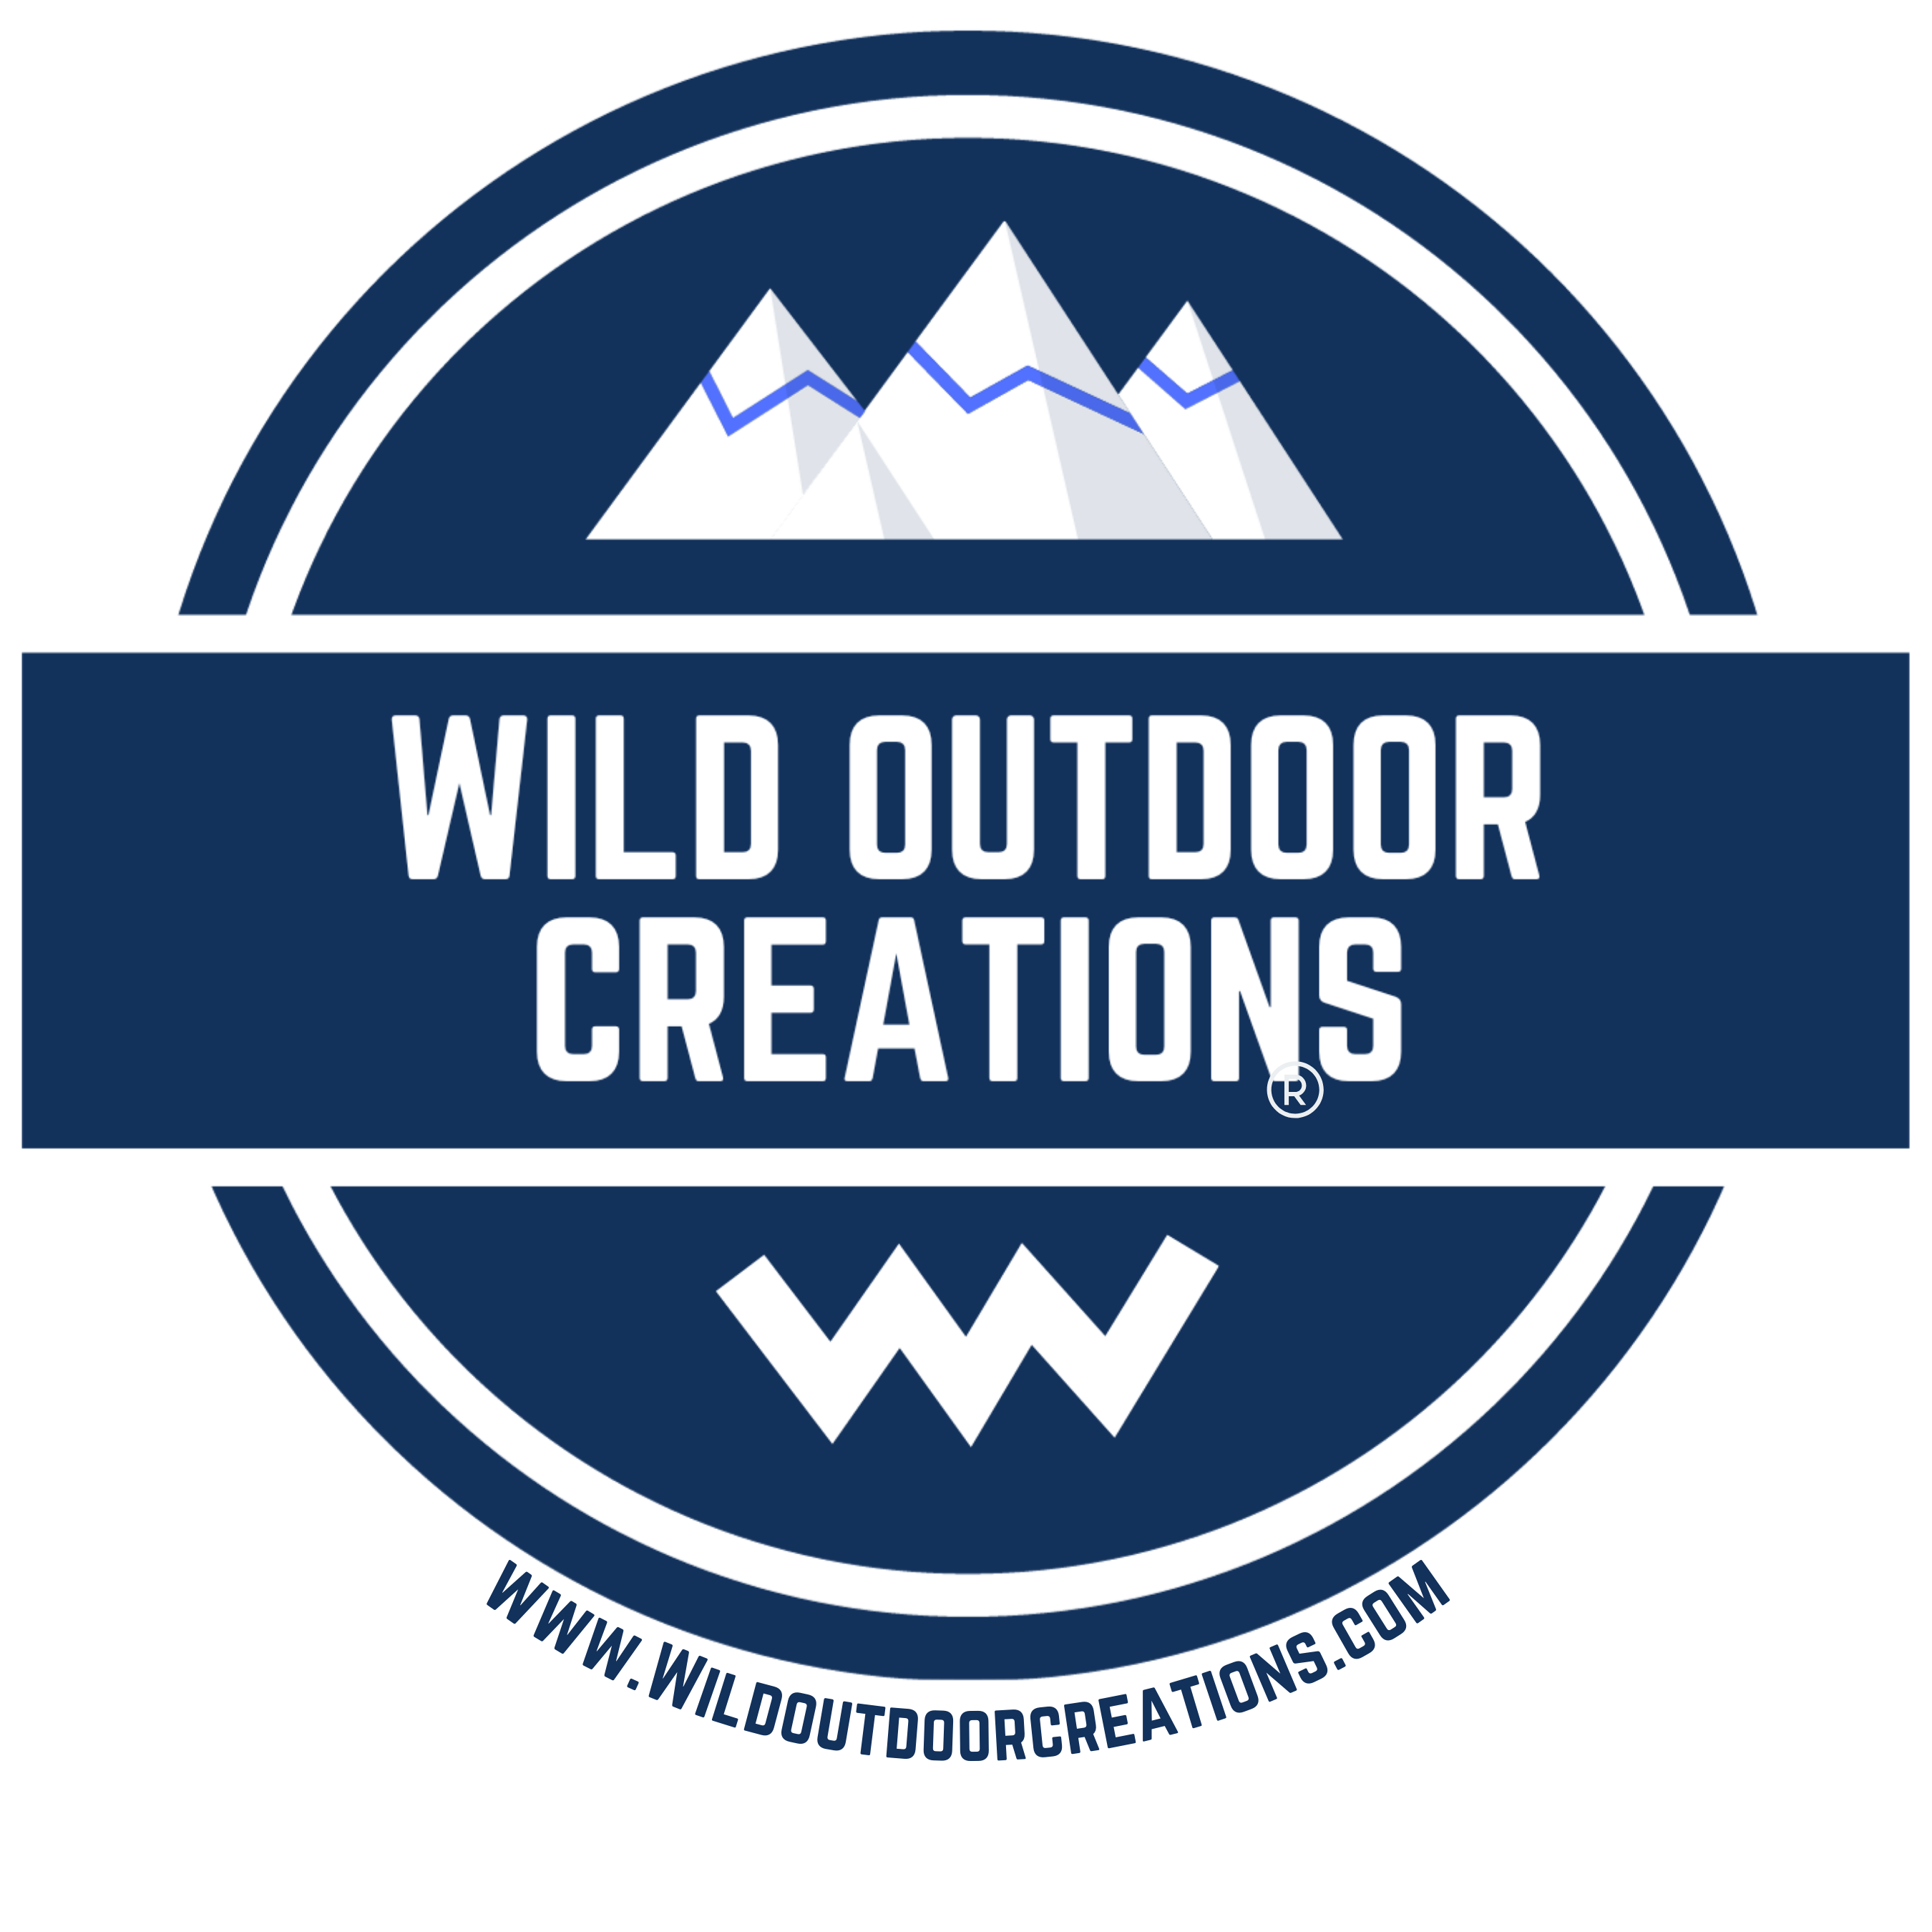 Wild Outdoor Creations